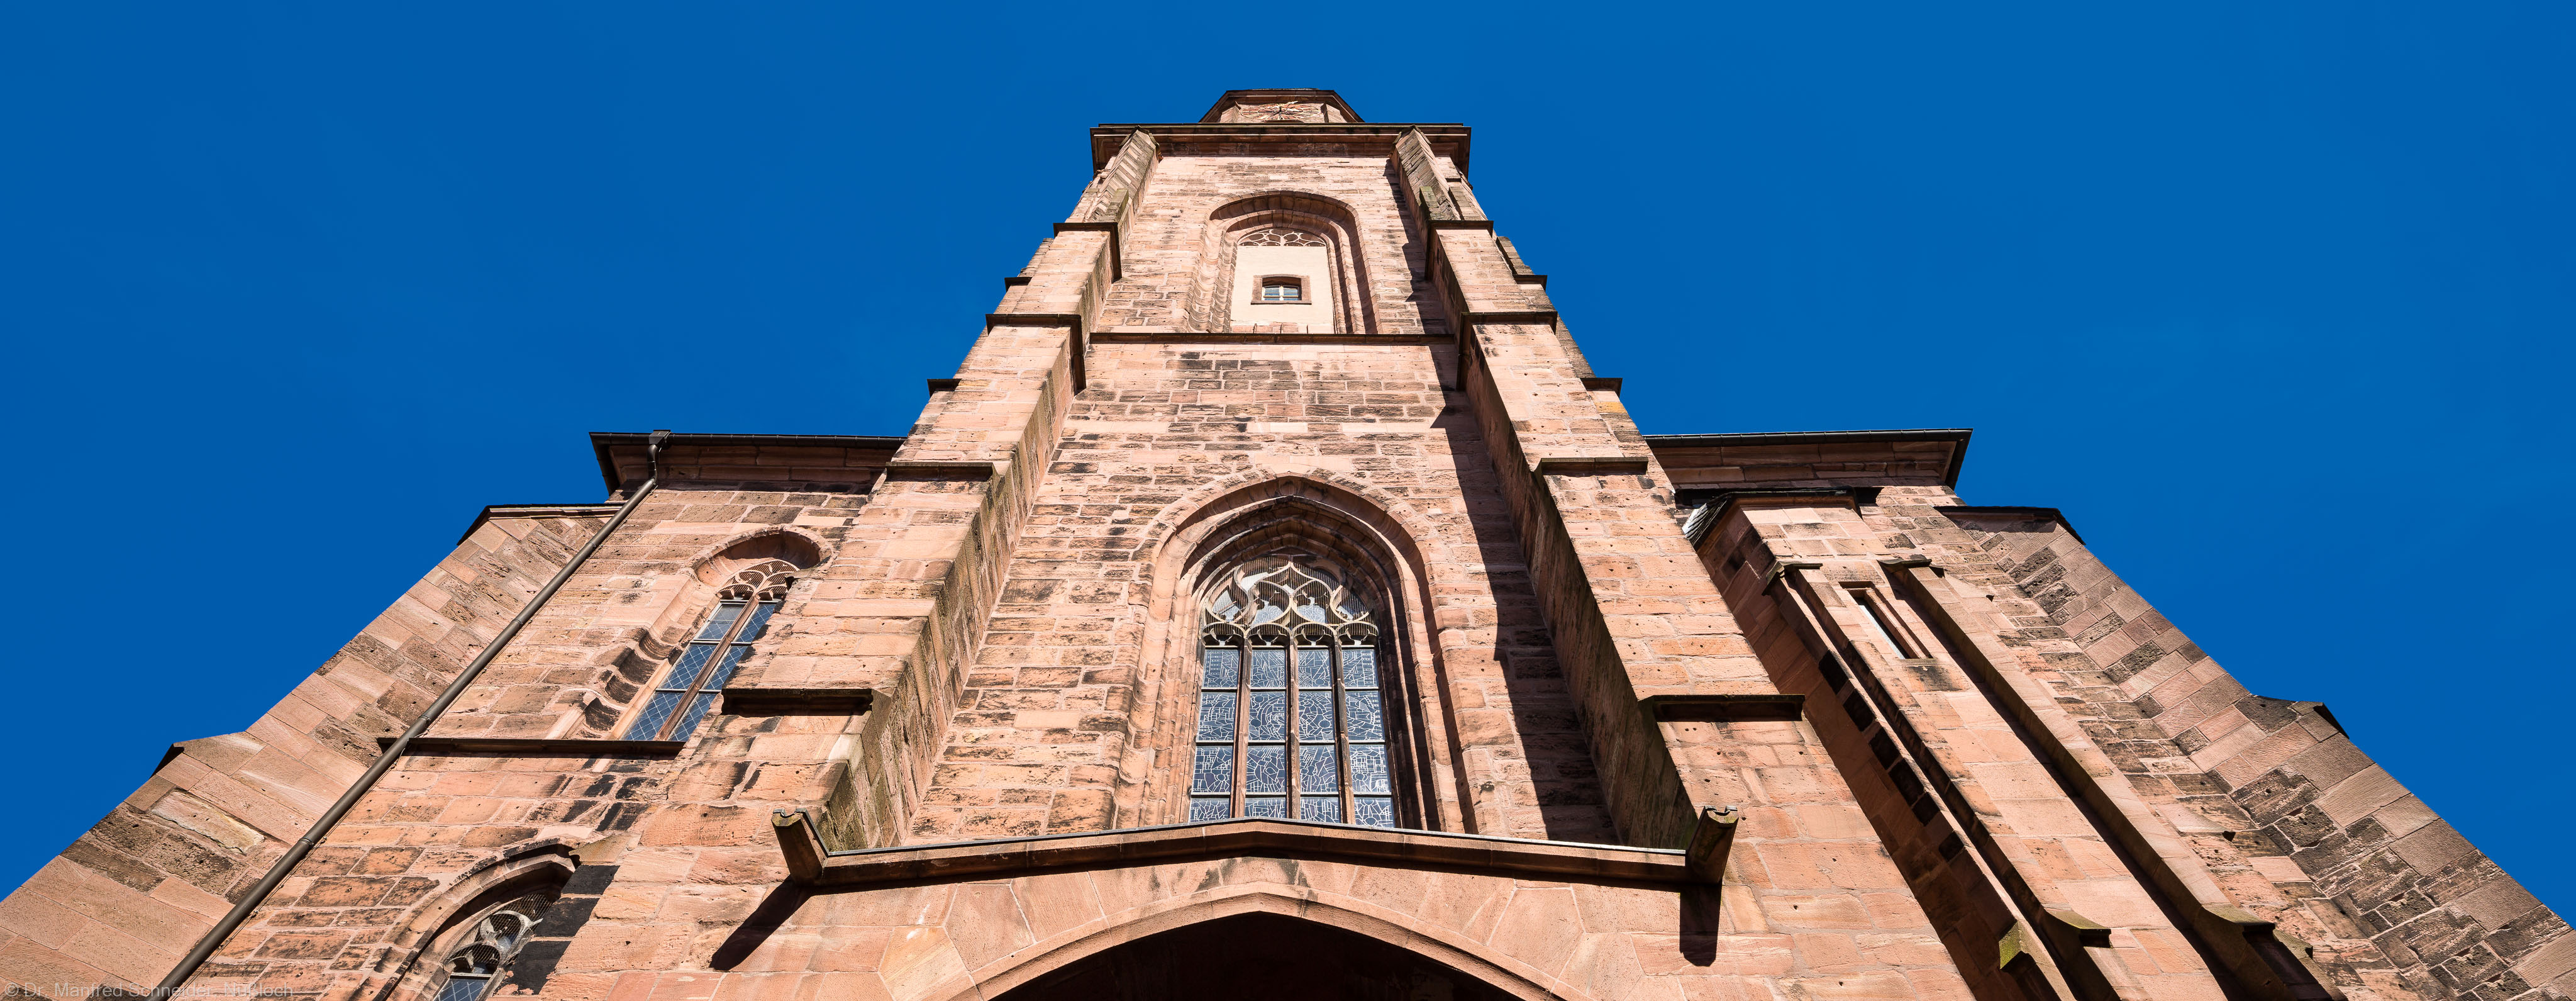 Heidelberg - Heiliggeistkirche - Aussen / West - Blick nach oben auf das Westwerk und den Turm (aufgenommen im Mai 2015, am späten Nachmittag)